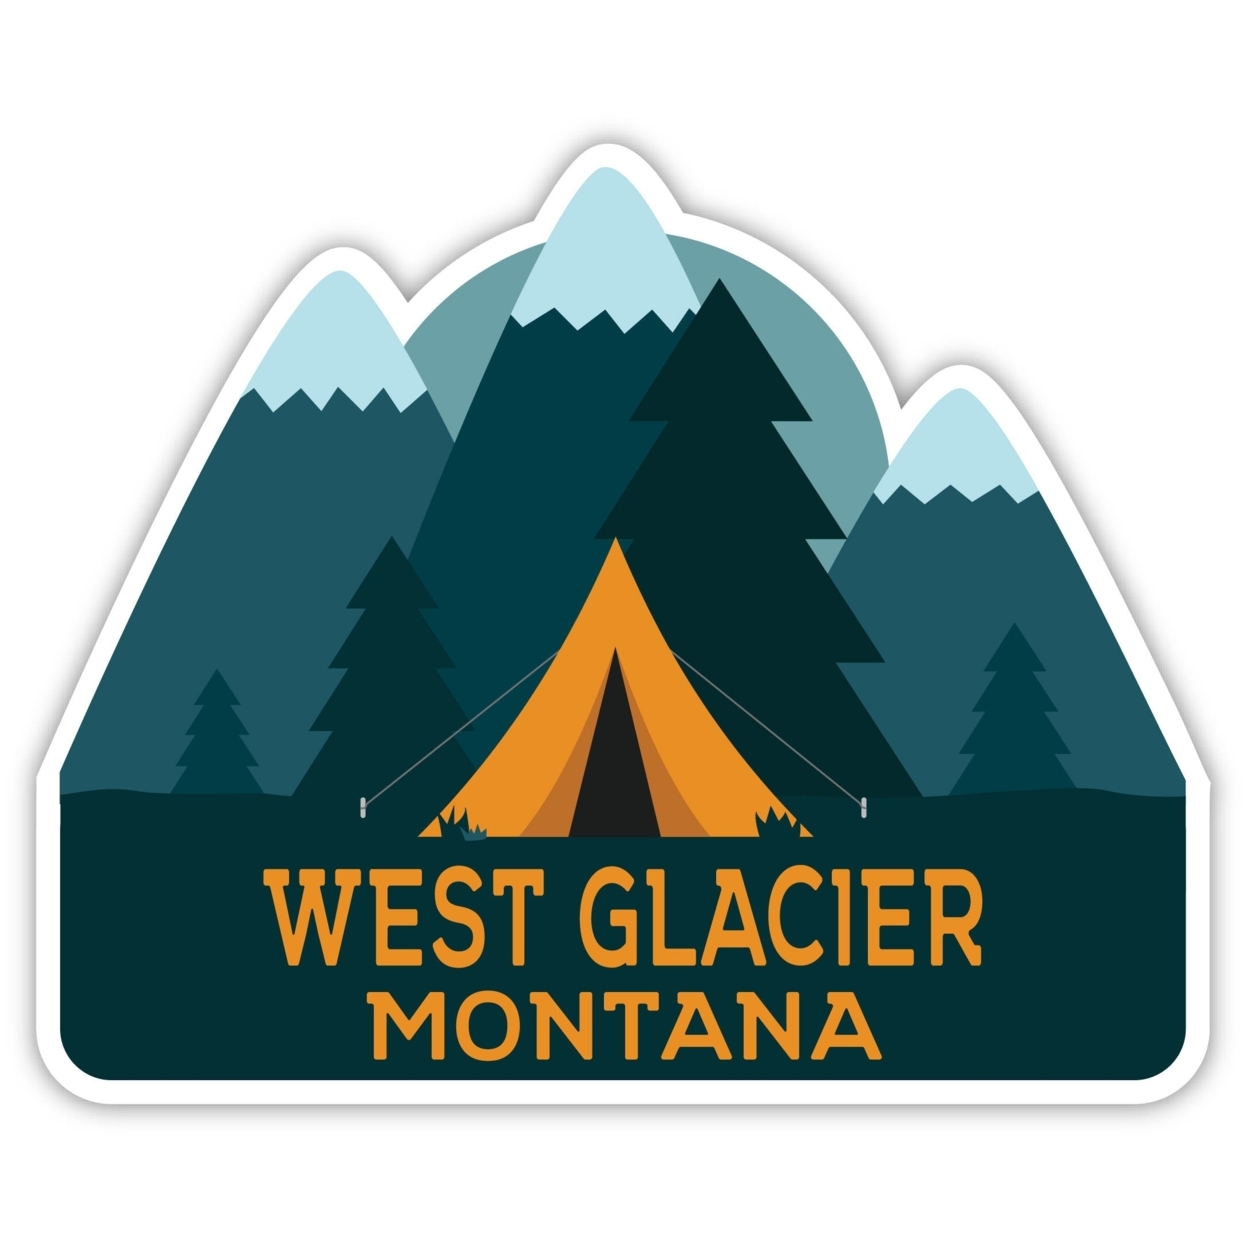 West Glacier Montana Souvenir Decorative Stickers (Choose Theme And Size) - Single Unit, 2-Inch, Tent